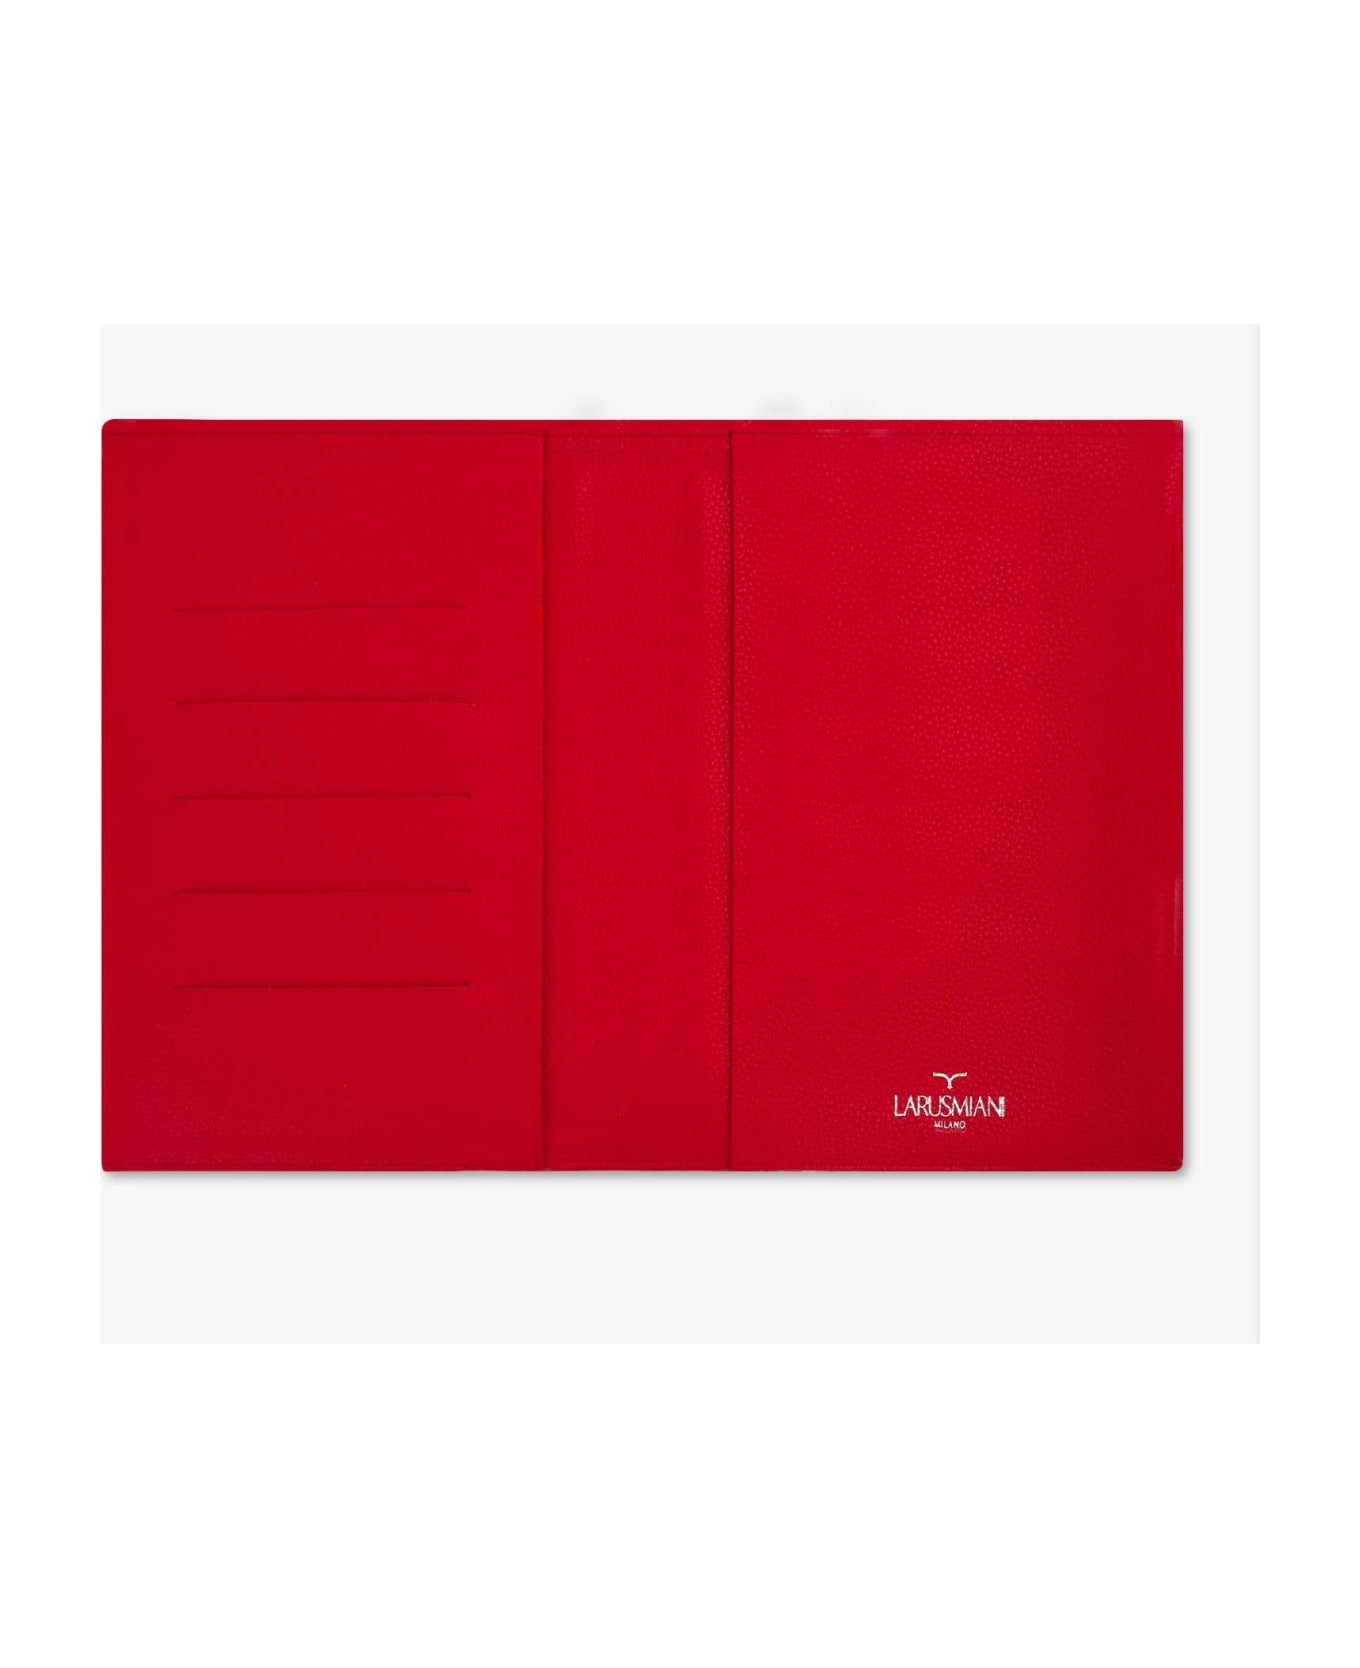 Larusmiani Leather Car Folder  - Red インテリア雑貨